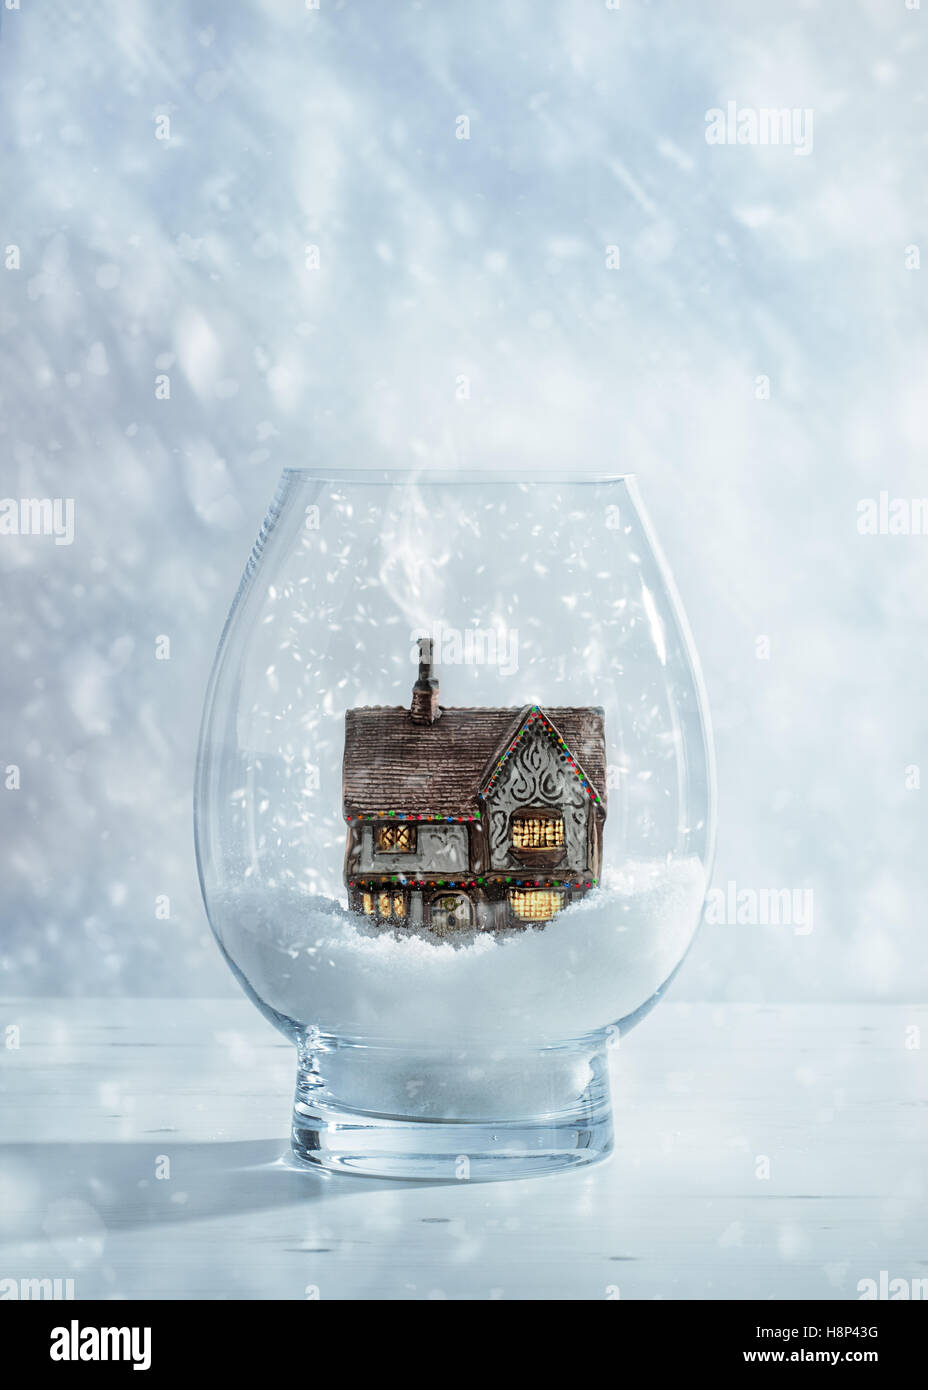 Chalet décoré de guirlandes lumineuses de Noël Boule à neige en verre Banque D'Images